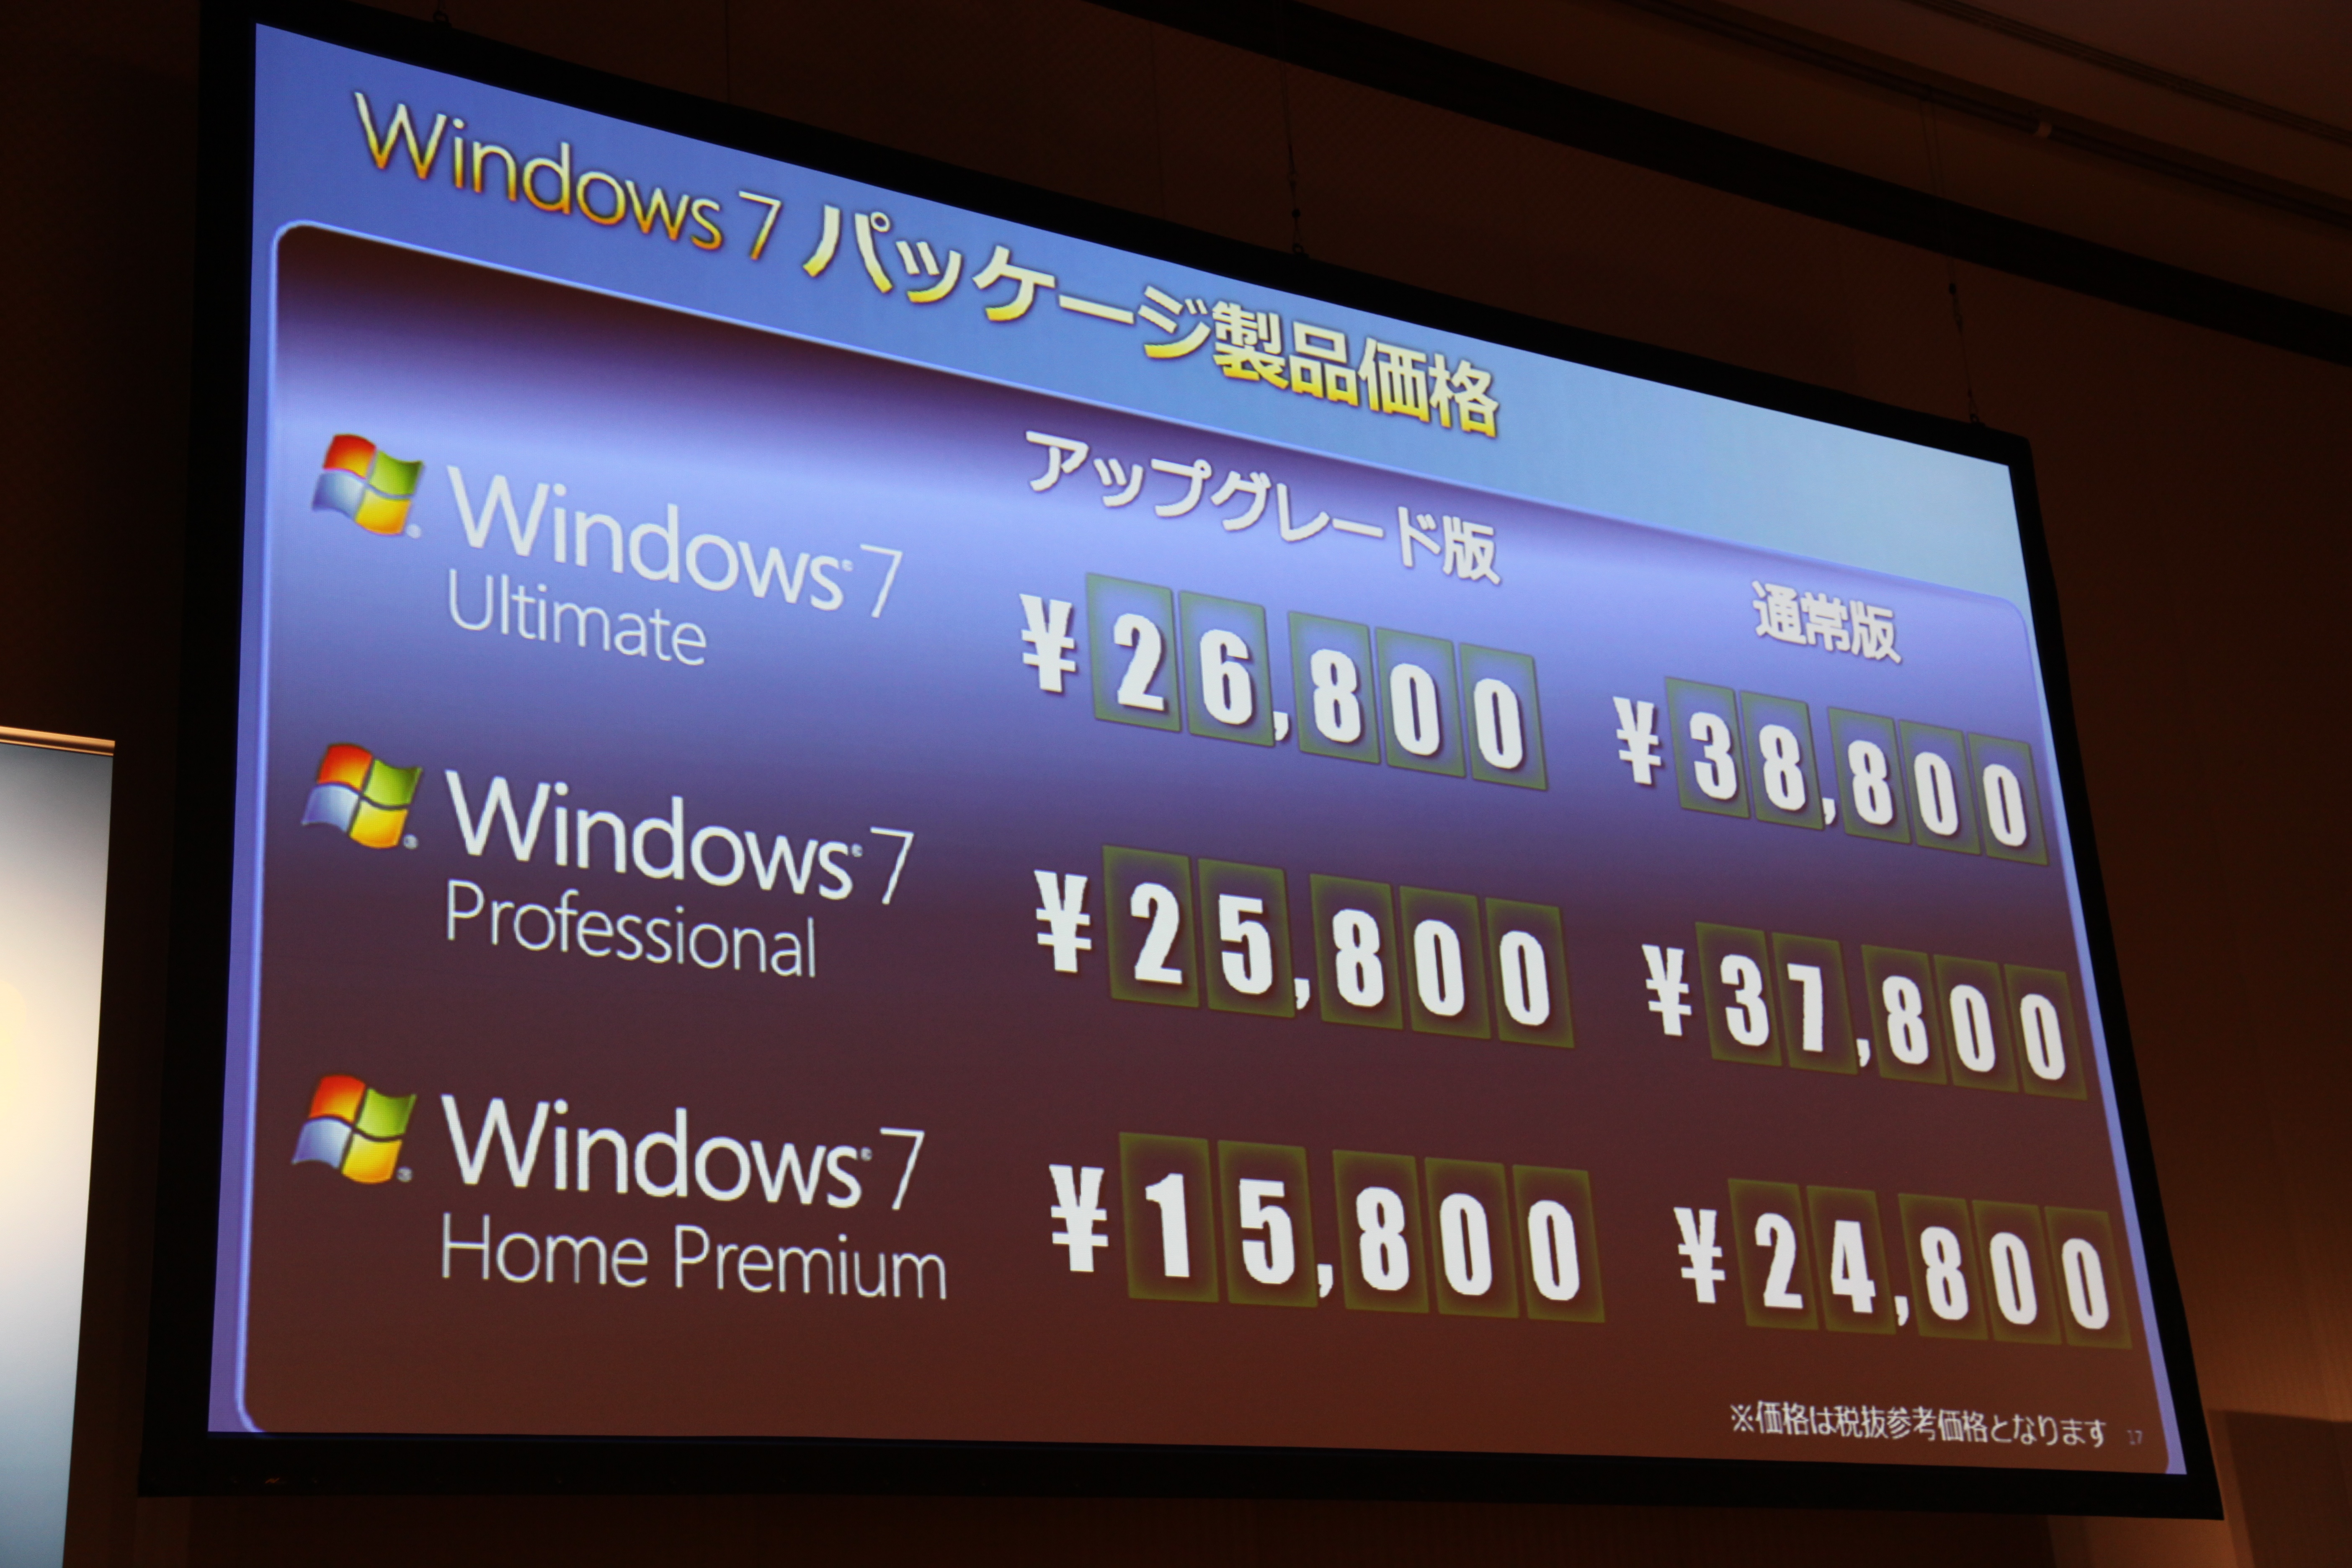 2. Chức năng mở rộng của Windows 7